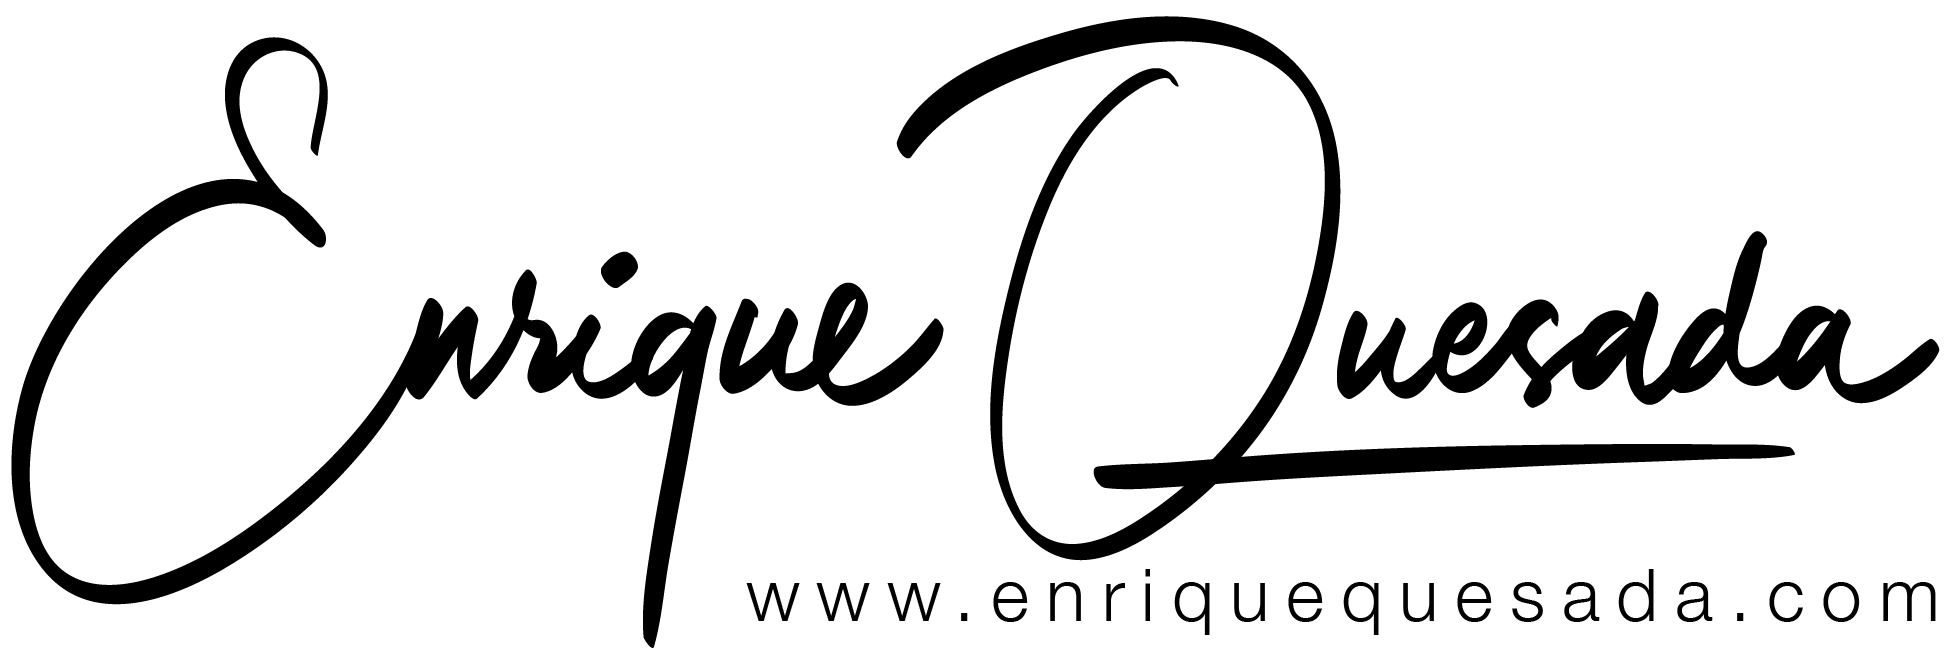 Enrique Quesada - Fotografía